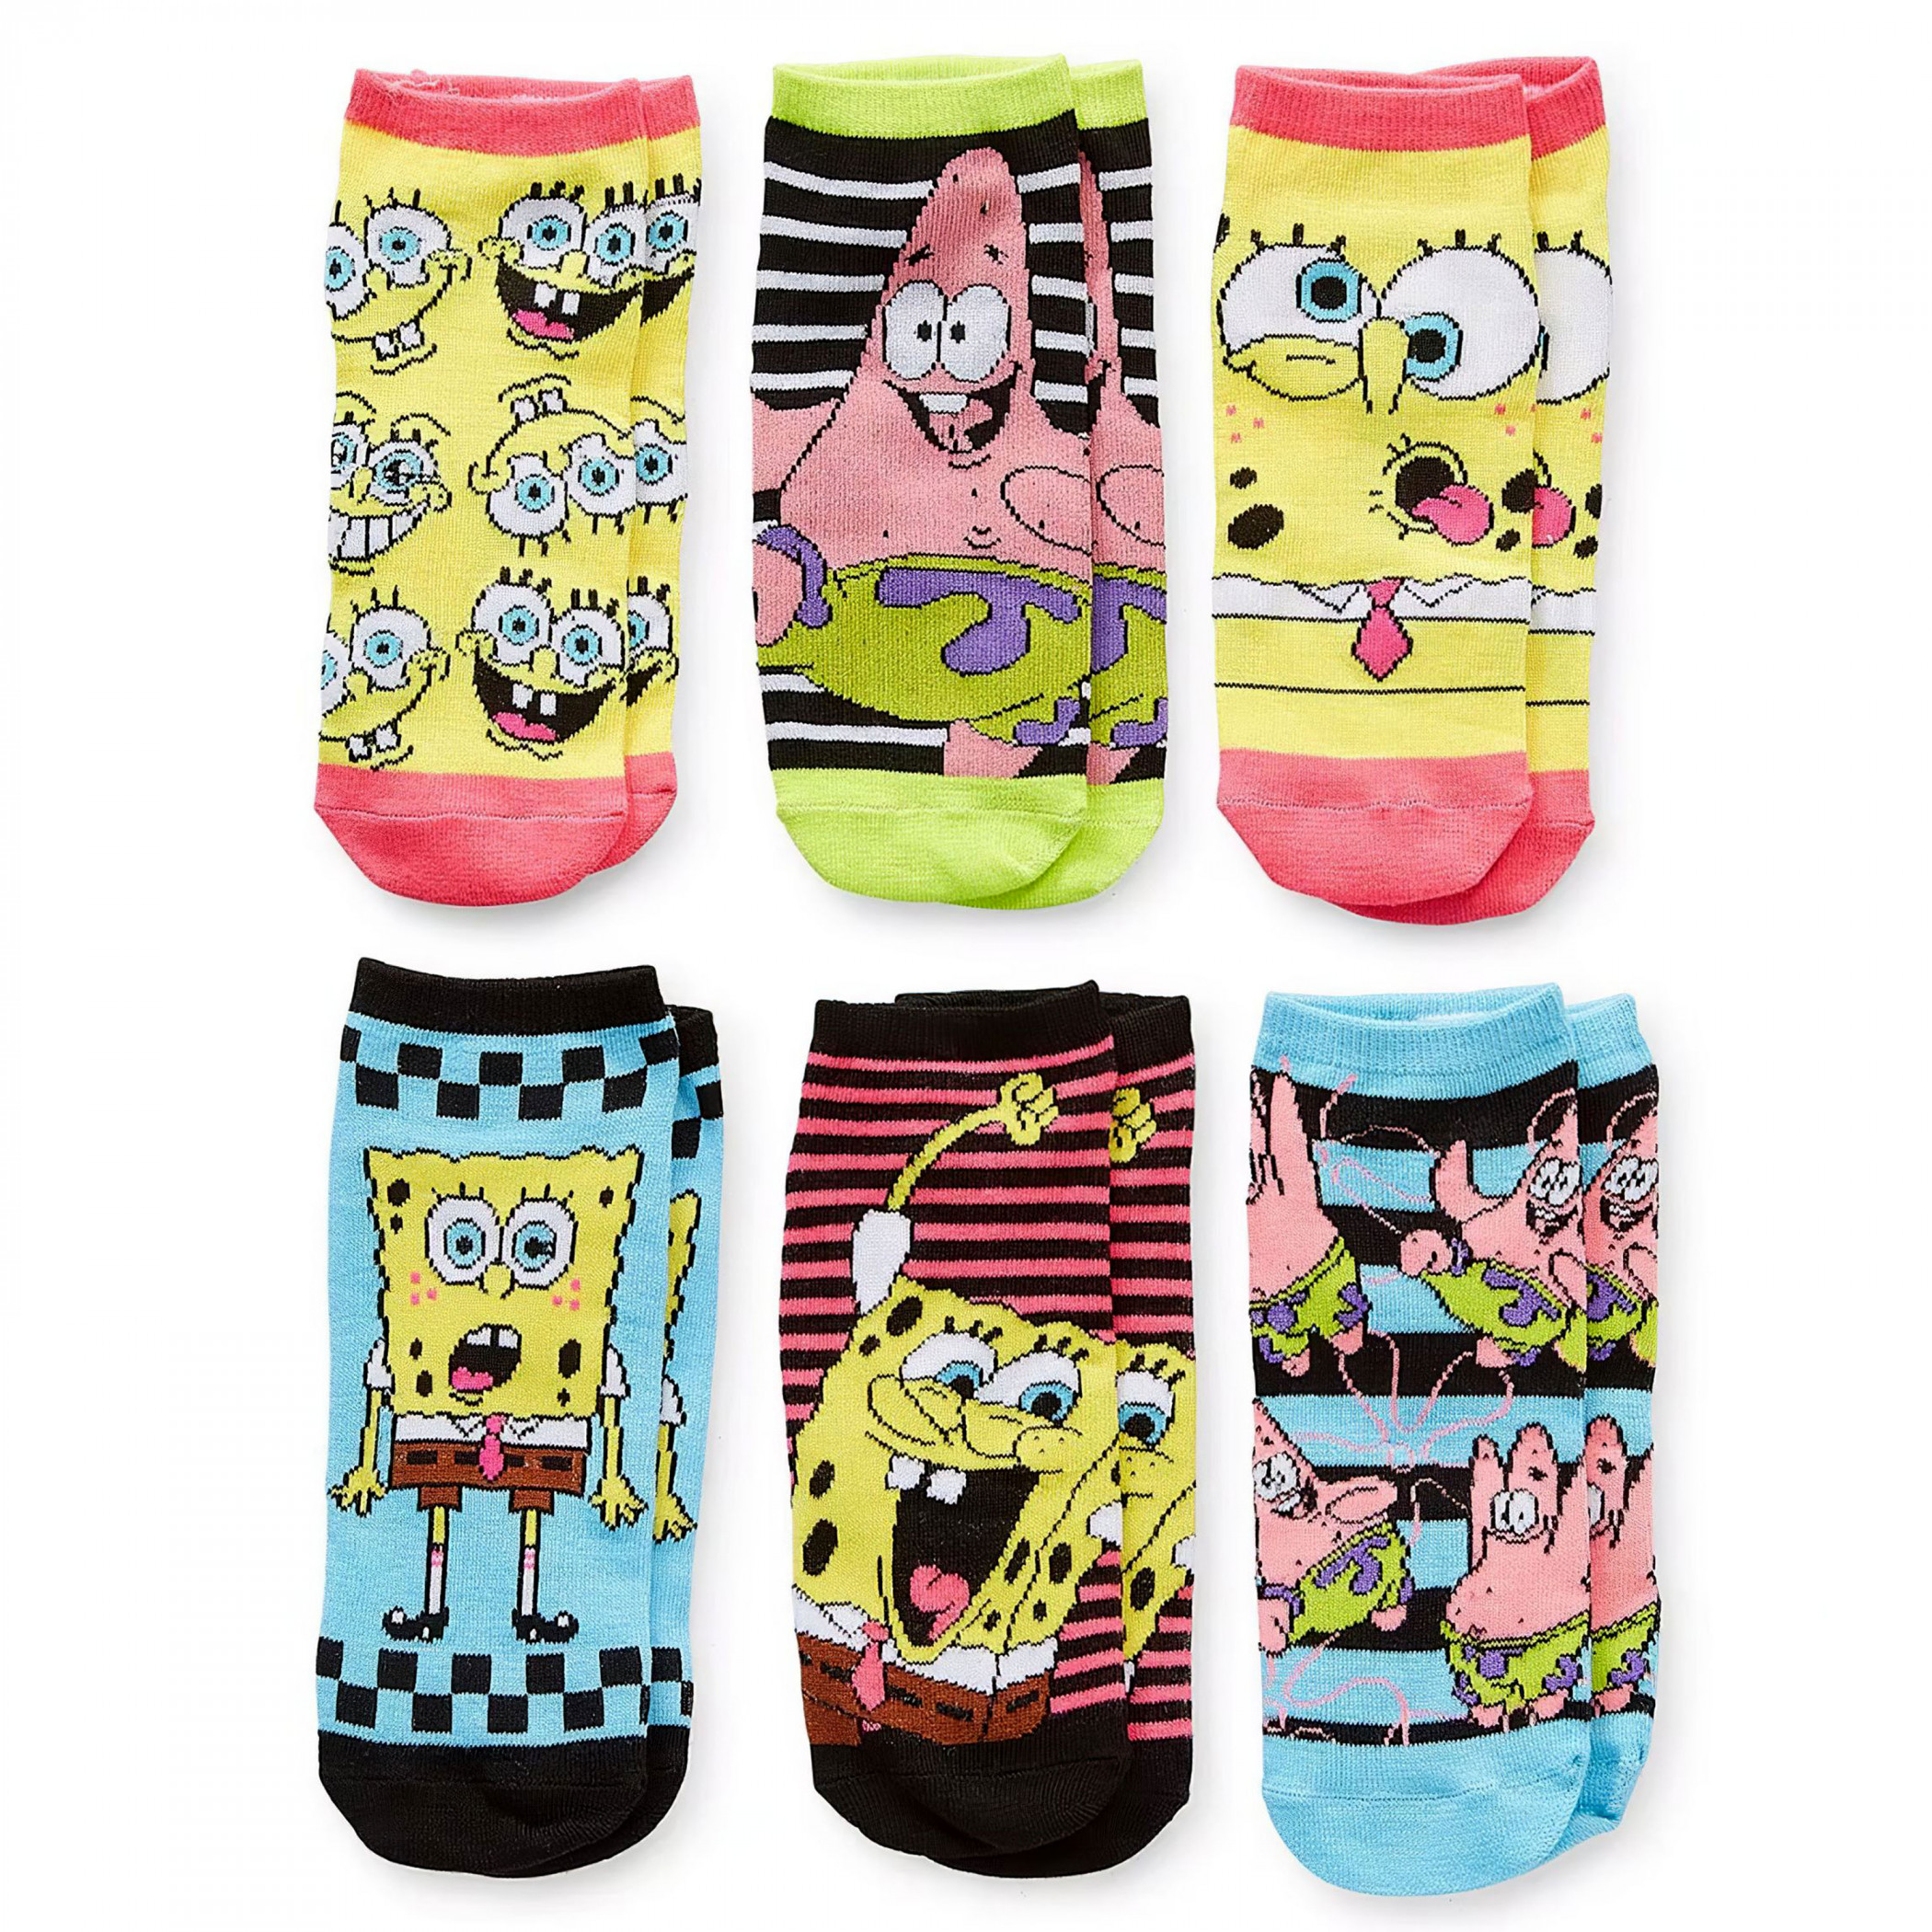 SpongeBob and Patrick Fun Time Women's 6-Pair Pack of Low Cut Socks